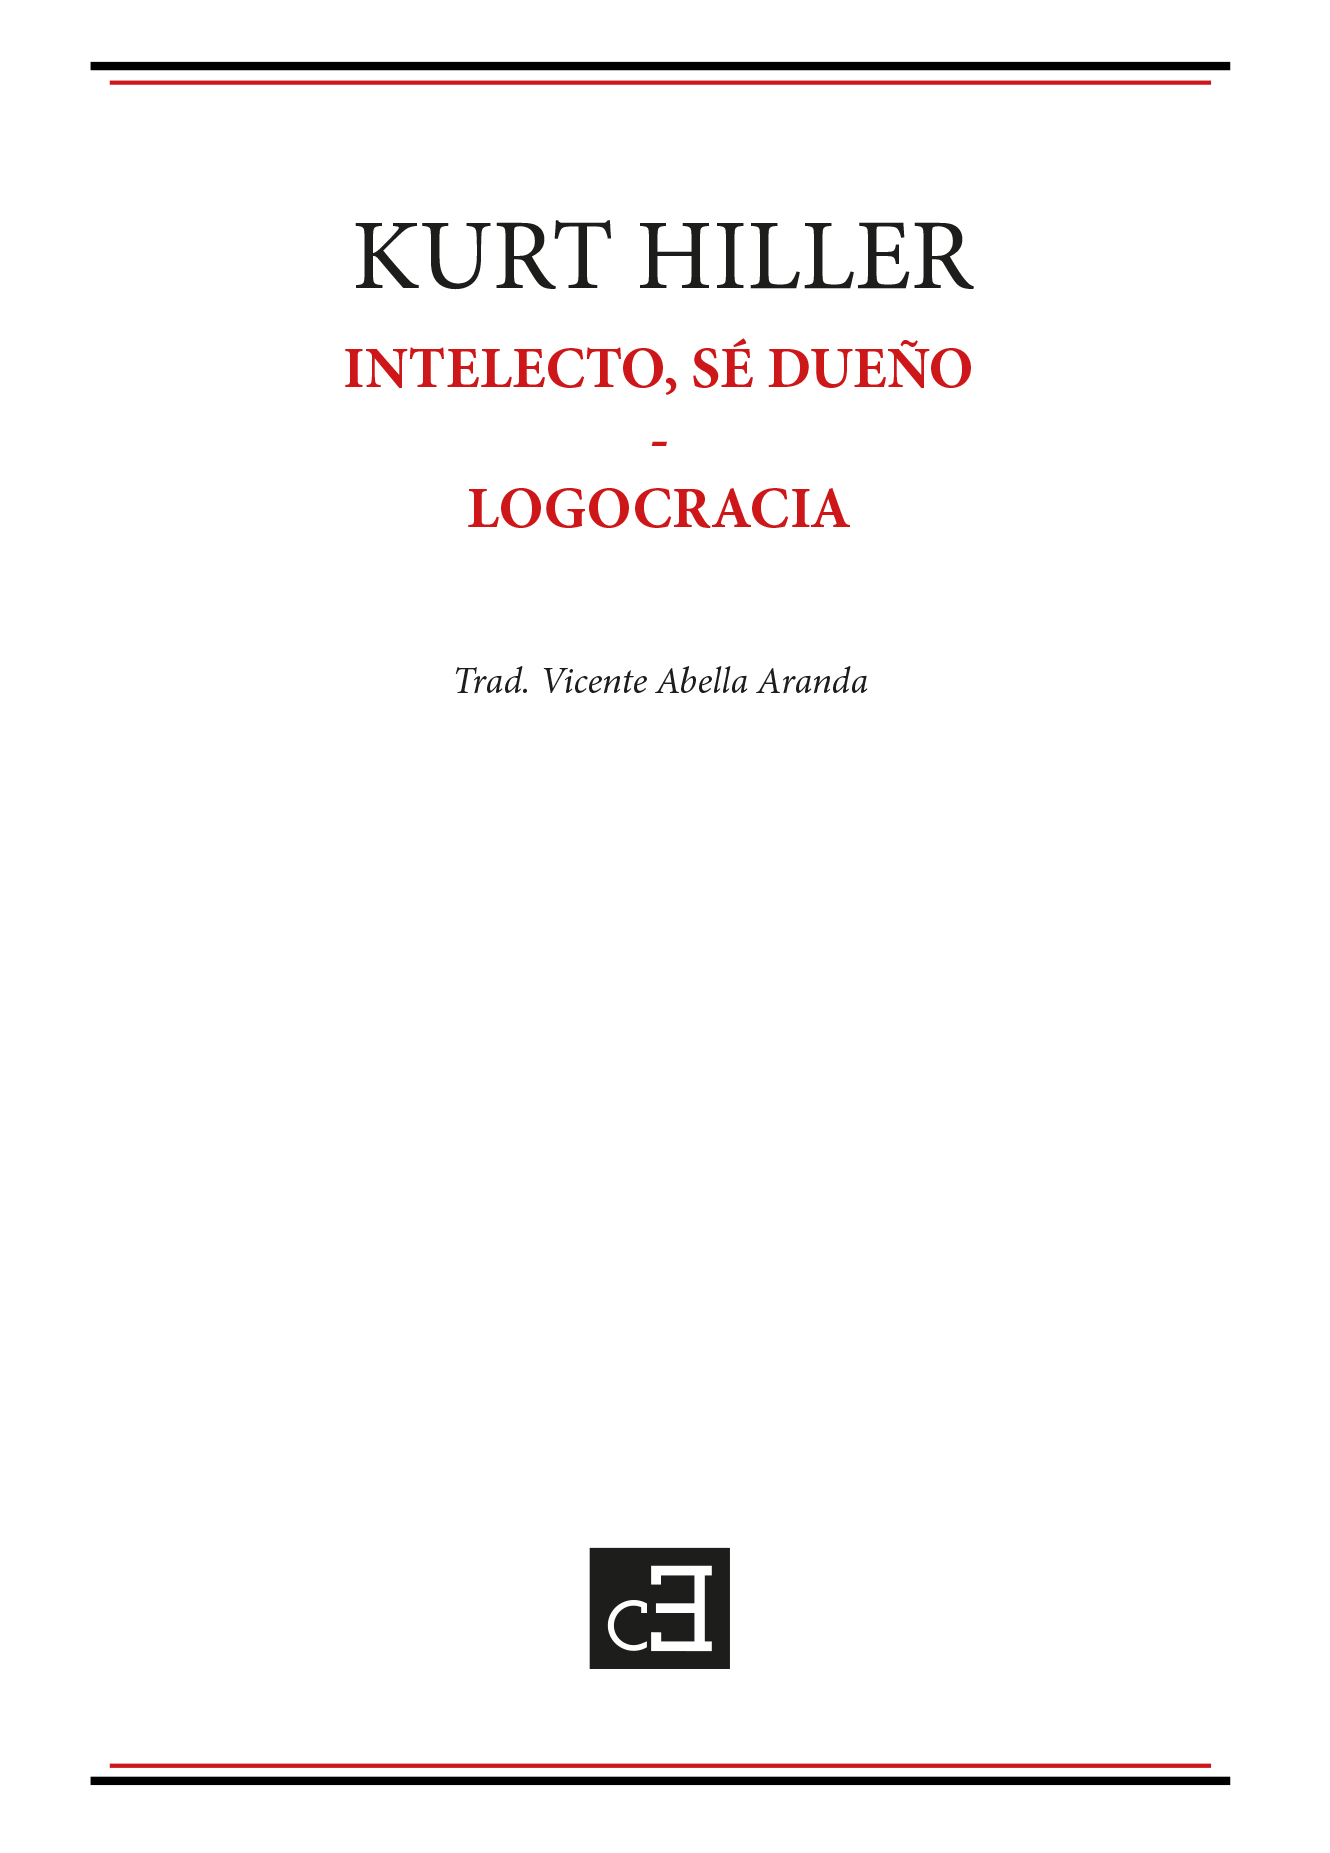 INTELECTO, SÉ DUEÑO | LOGOCRACIA